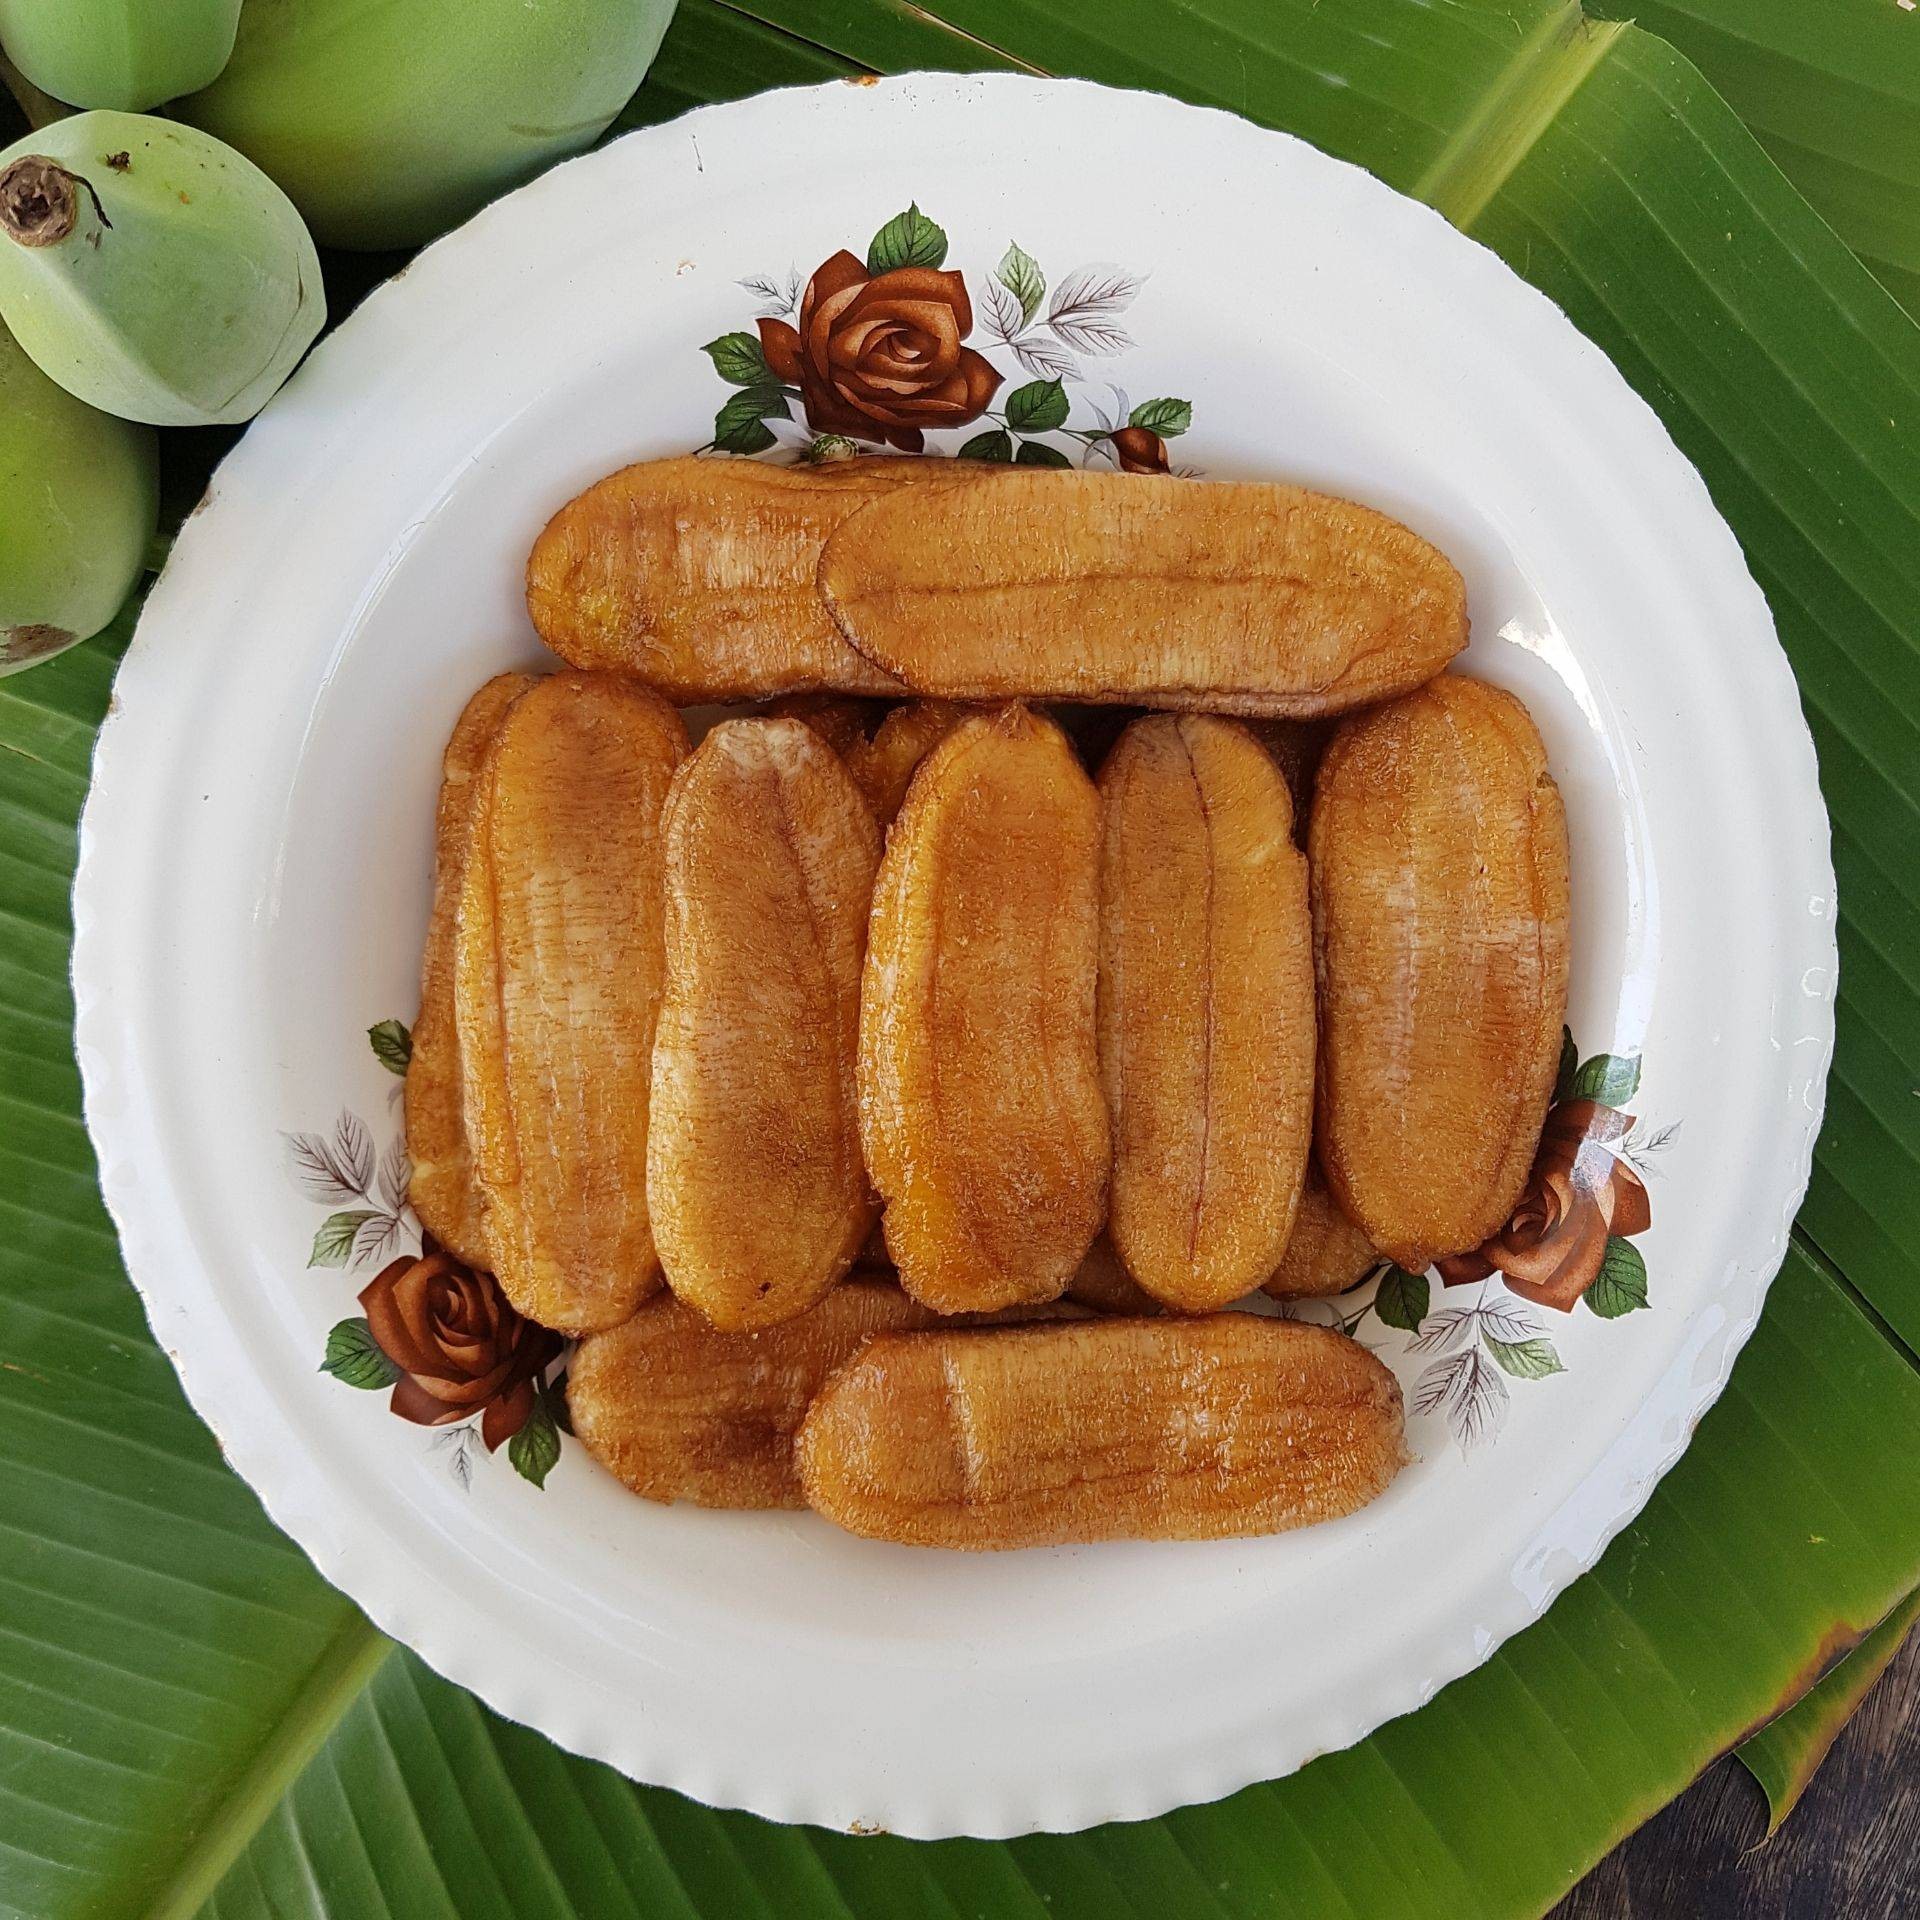 สูตร กล้วยตาก 43 องศา ☀ พร้อมวิธีทำโดย Porry Nattika